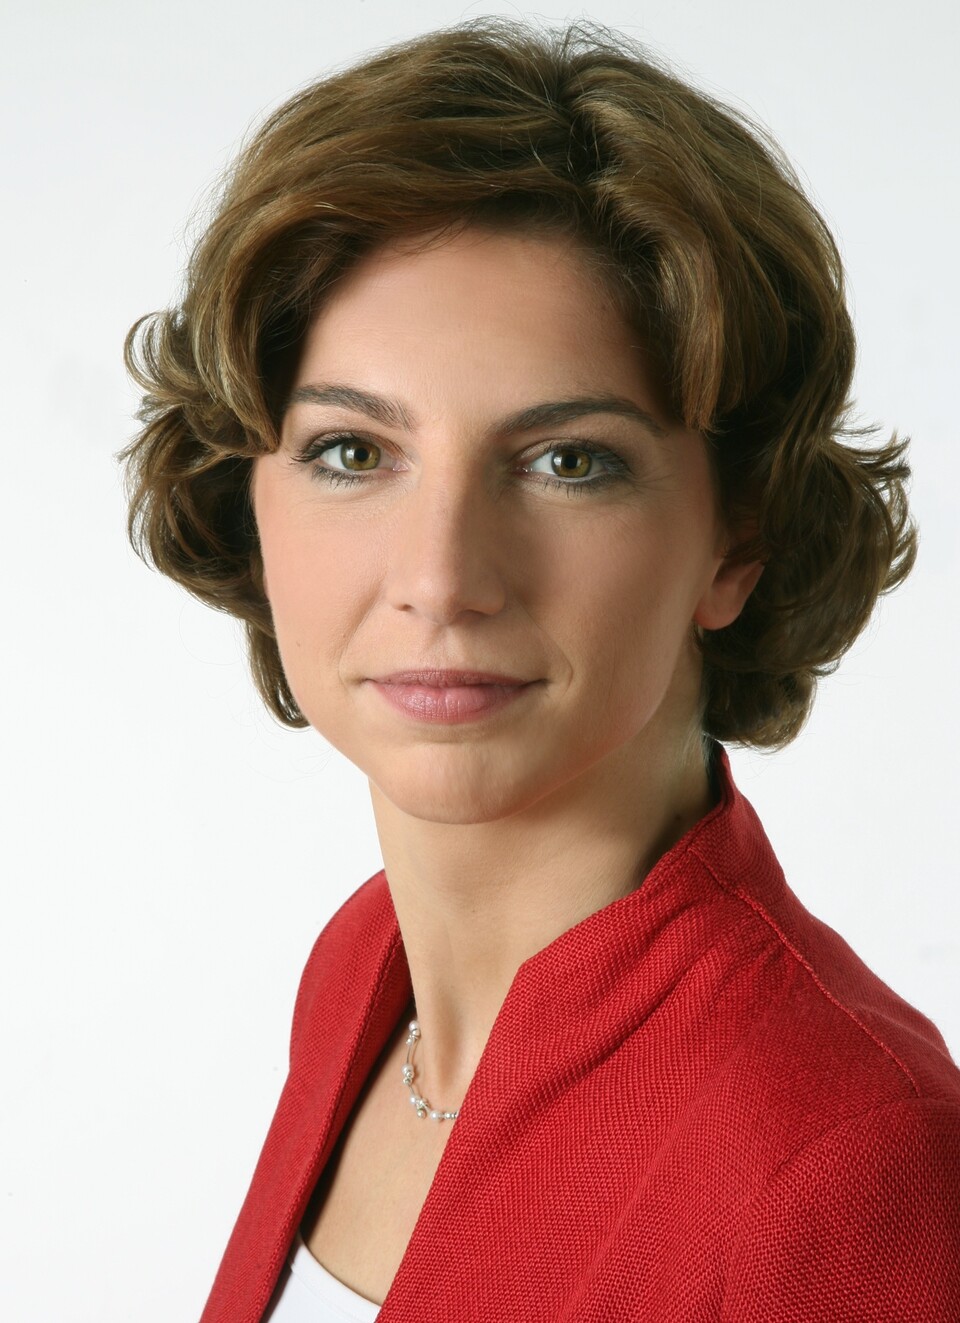 Sabine Bätzing